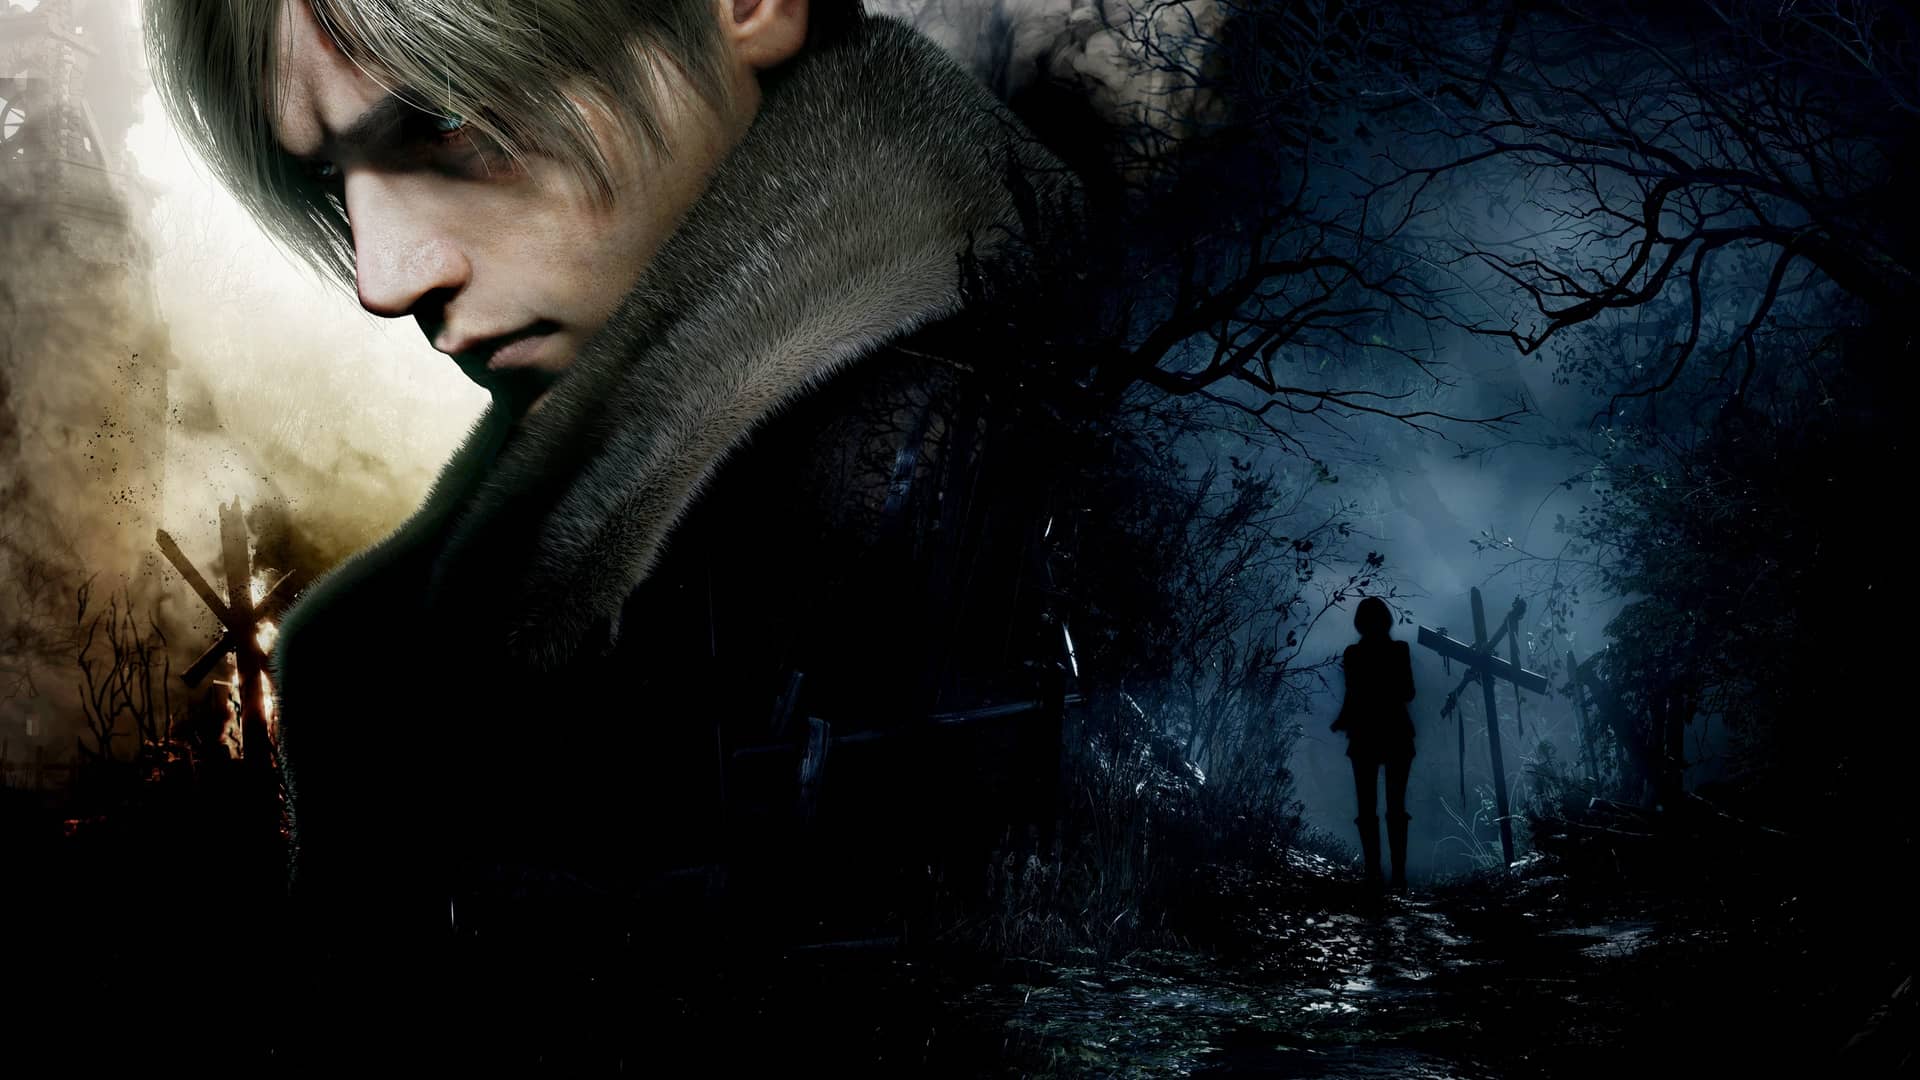 Artwork del juego Resident Evil 4 VR que es uno de los mejores juegos para las oculus quest 2